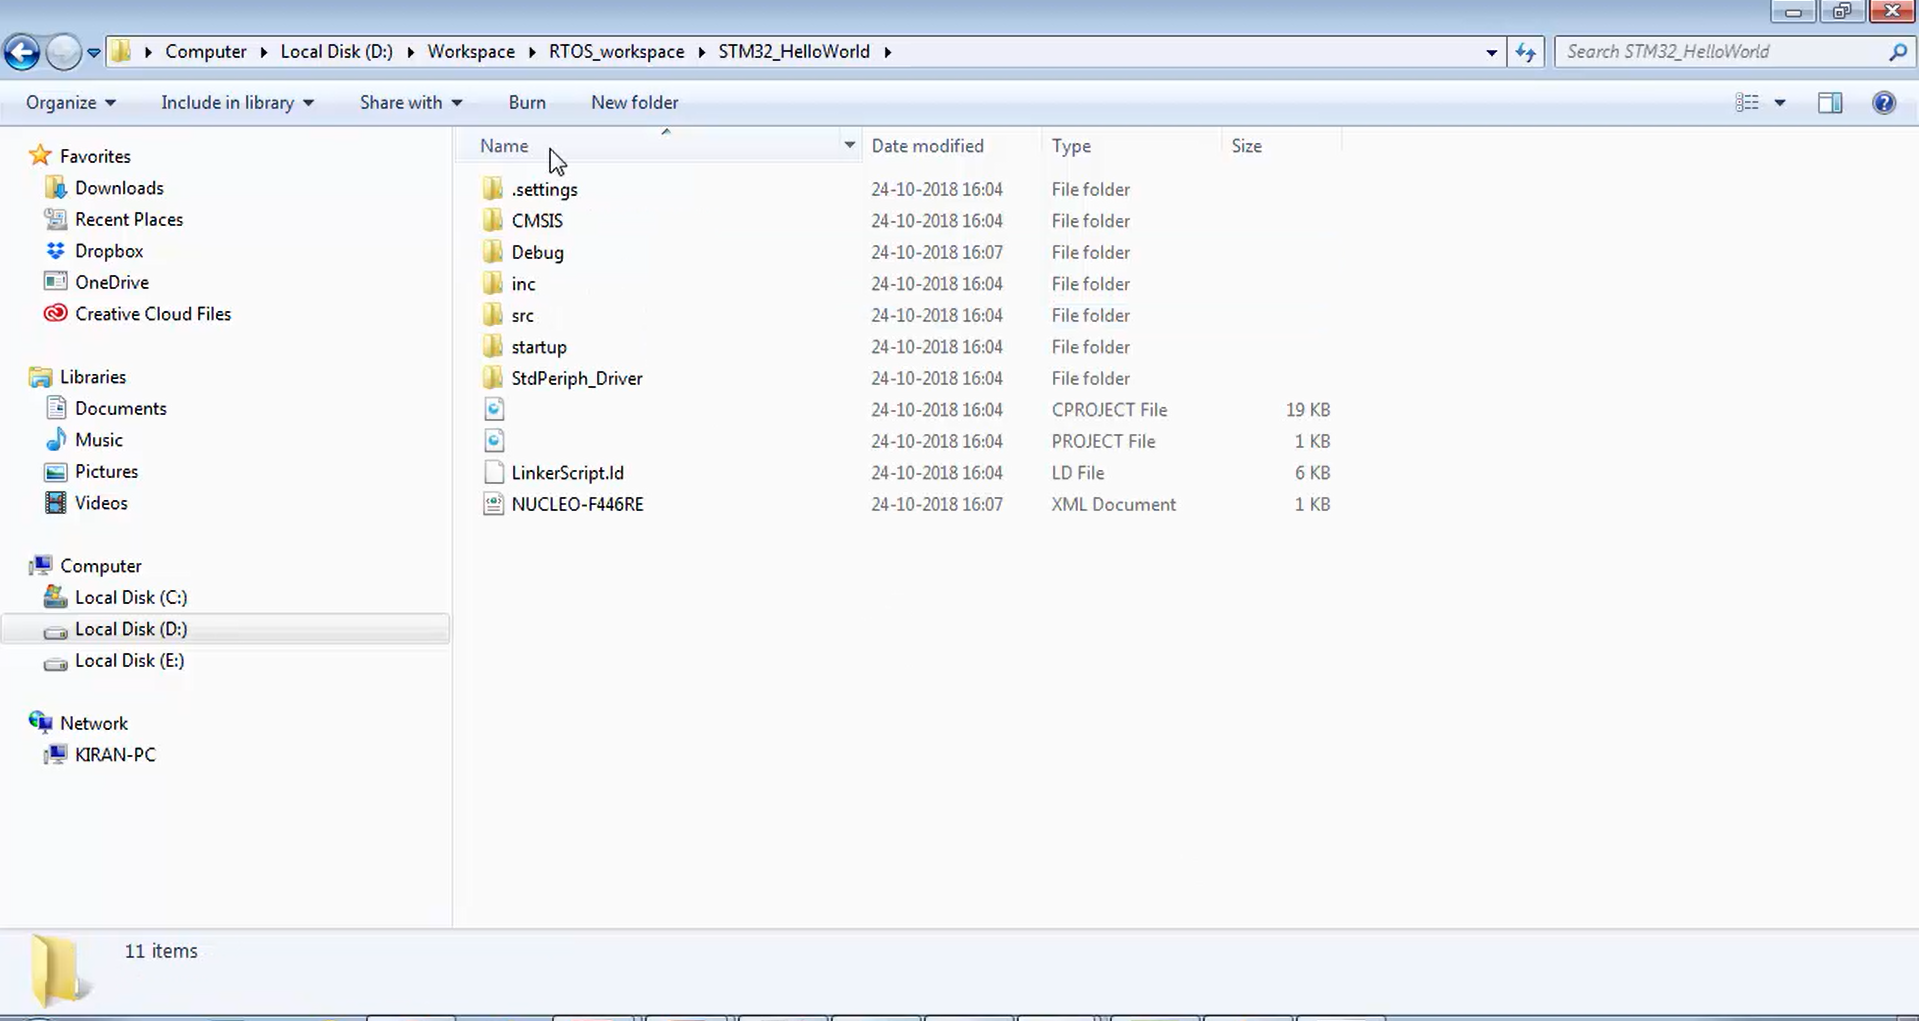 Folder structures inside the STM32_HelloWorld project folder